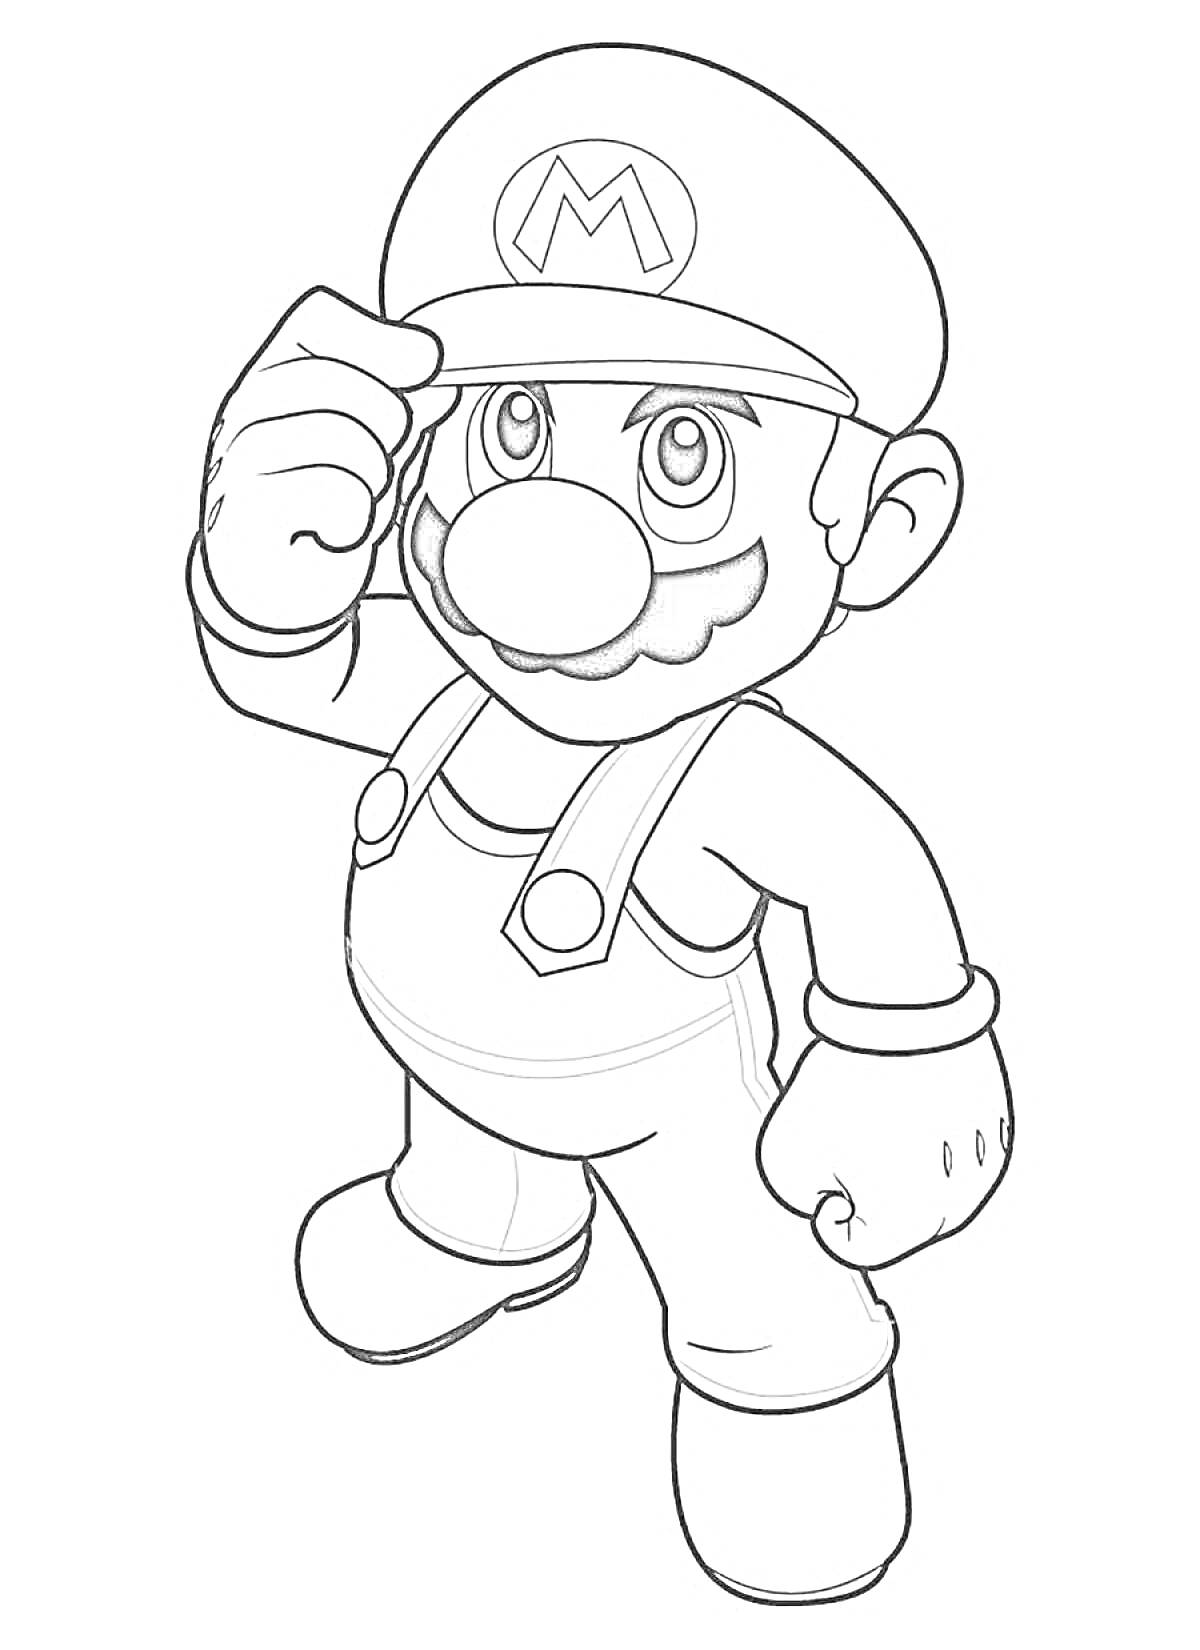 Раскраска Марио в кепке, поднимающий руку, в комбинезоне и перчатках, с поднятой головой